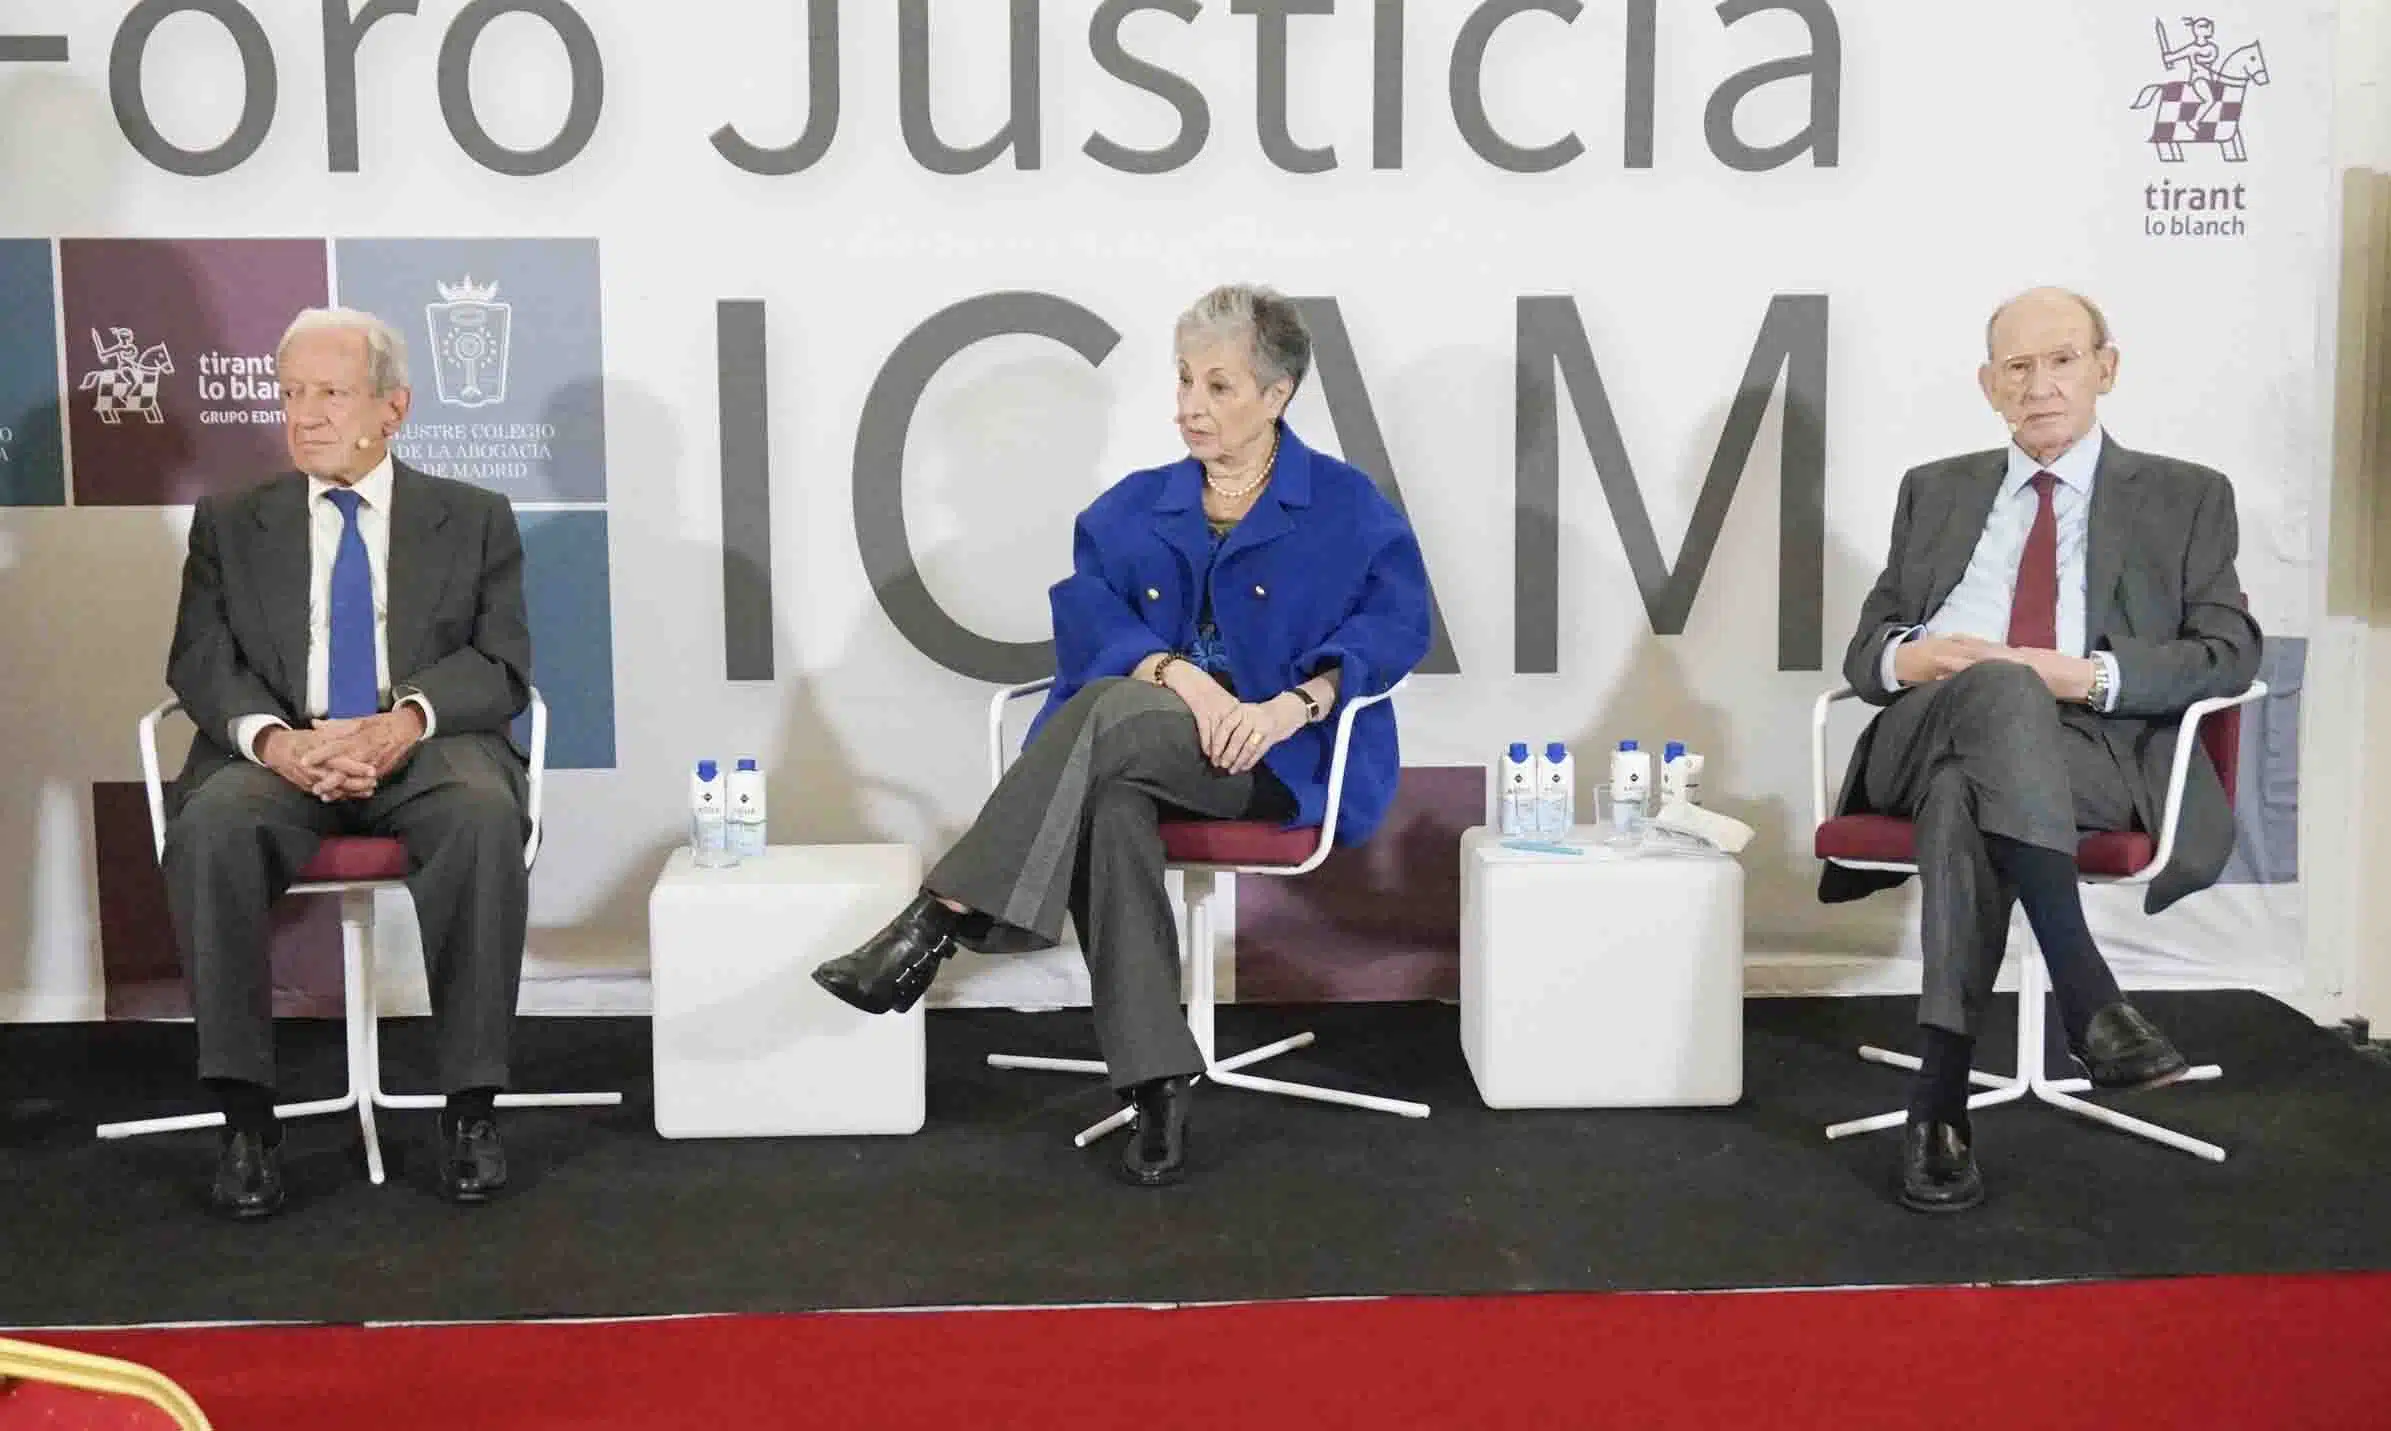 Sala, Roca y Gimbernat, tres maestros de lo jurídico en el coso del ICAM con ley de amnistía sobre el albero